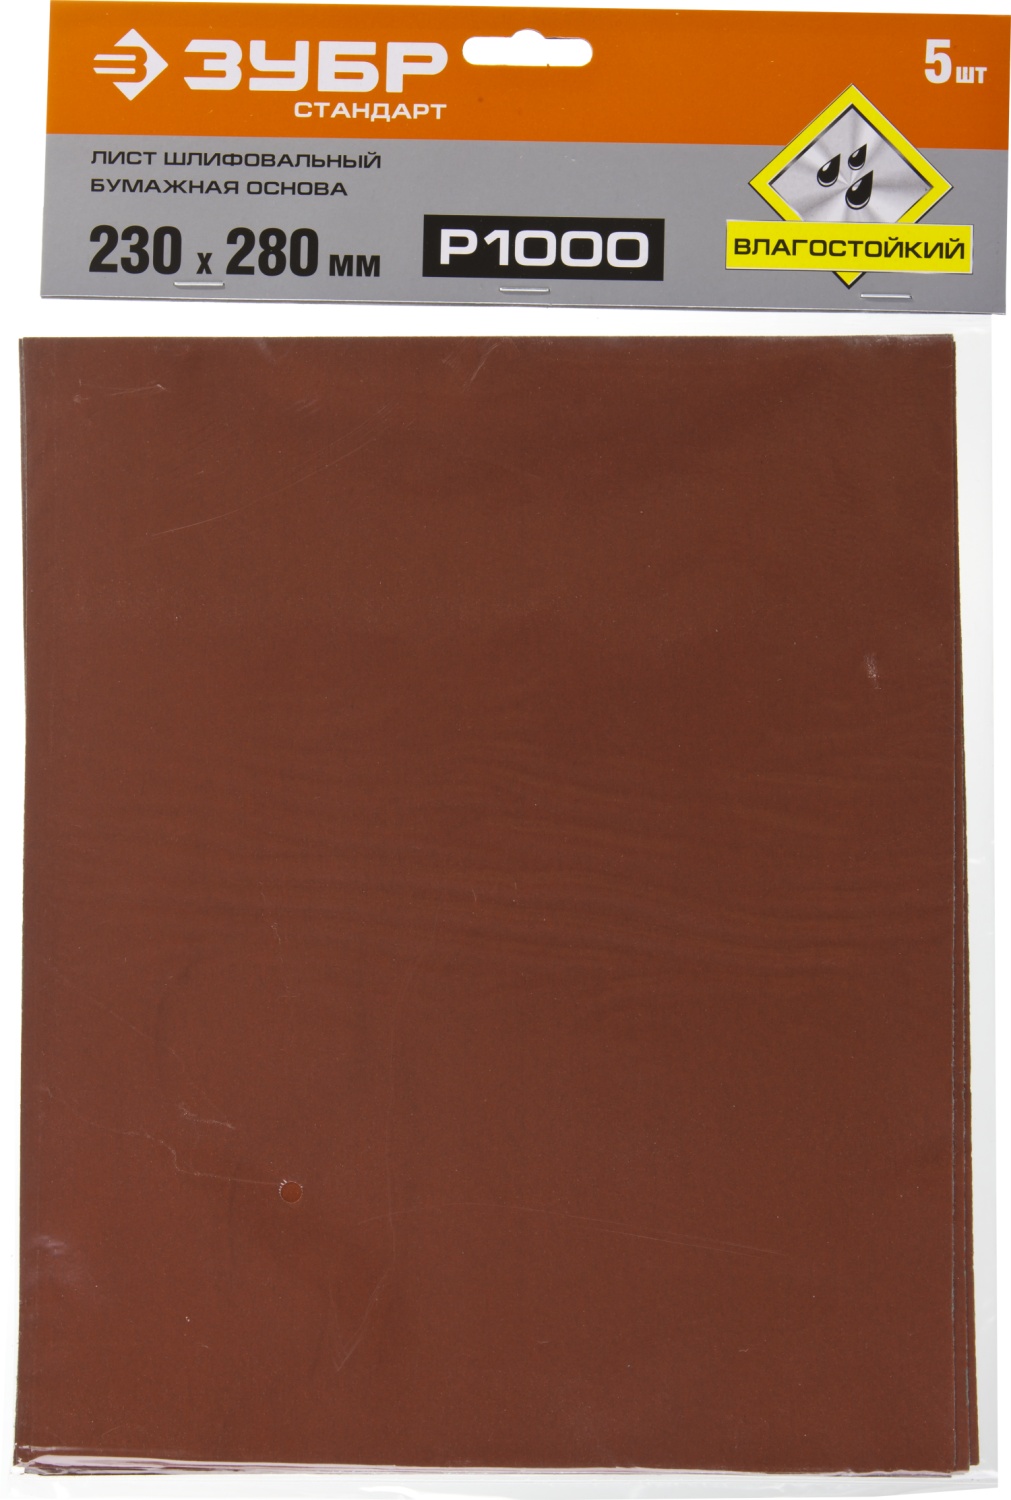 Лист шлифовальный водостойкий 230х280 мм Р-1000 ЗУБР Стандарт 35417-1000, бумажная основа, 5 шт - фото